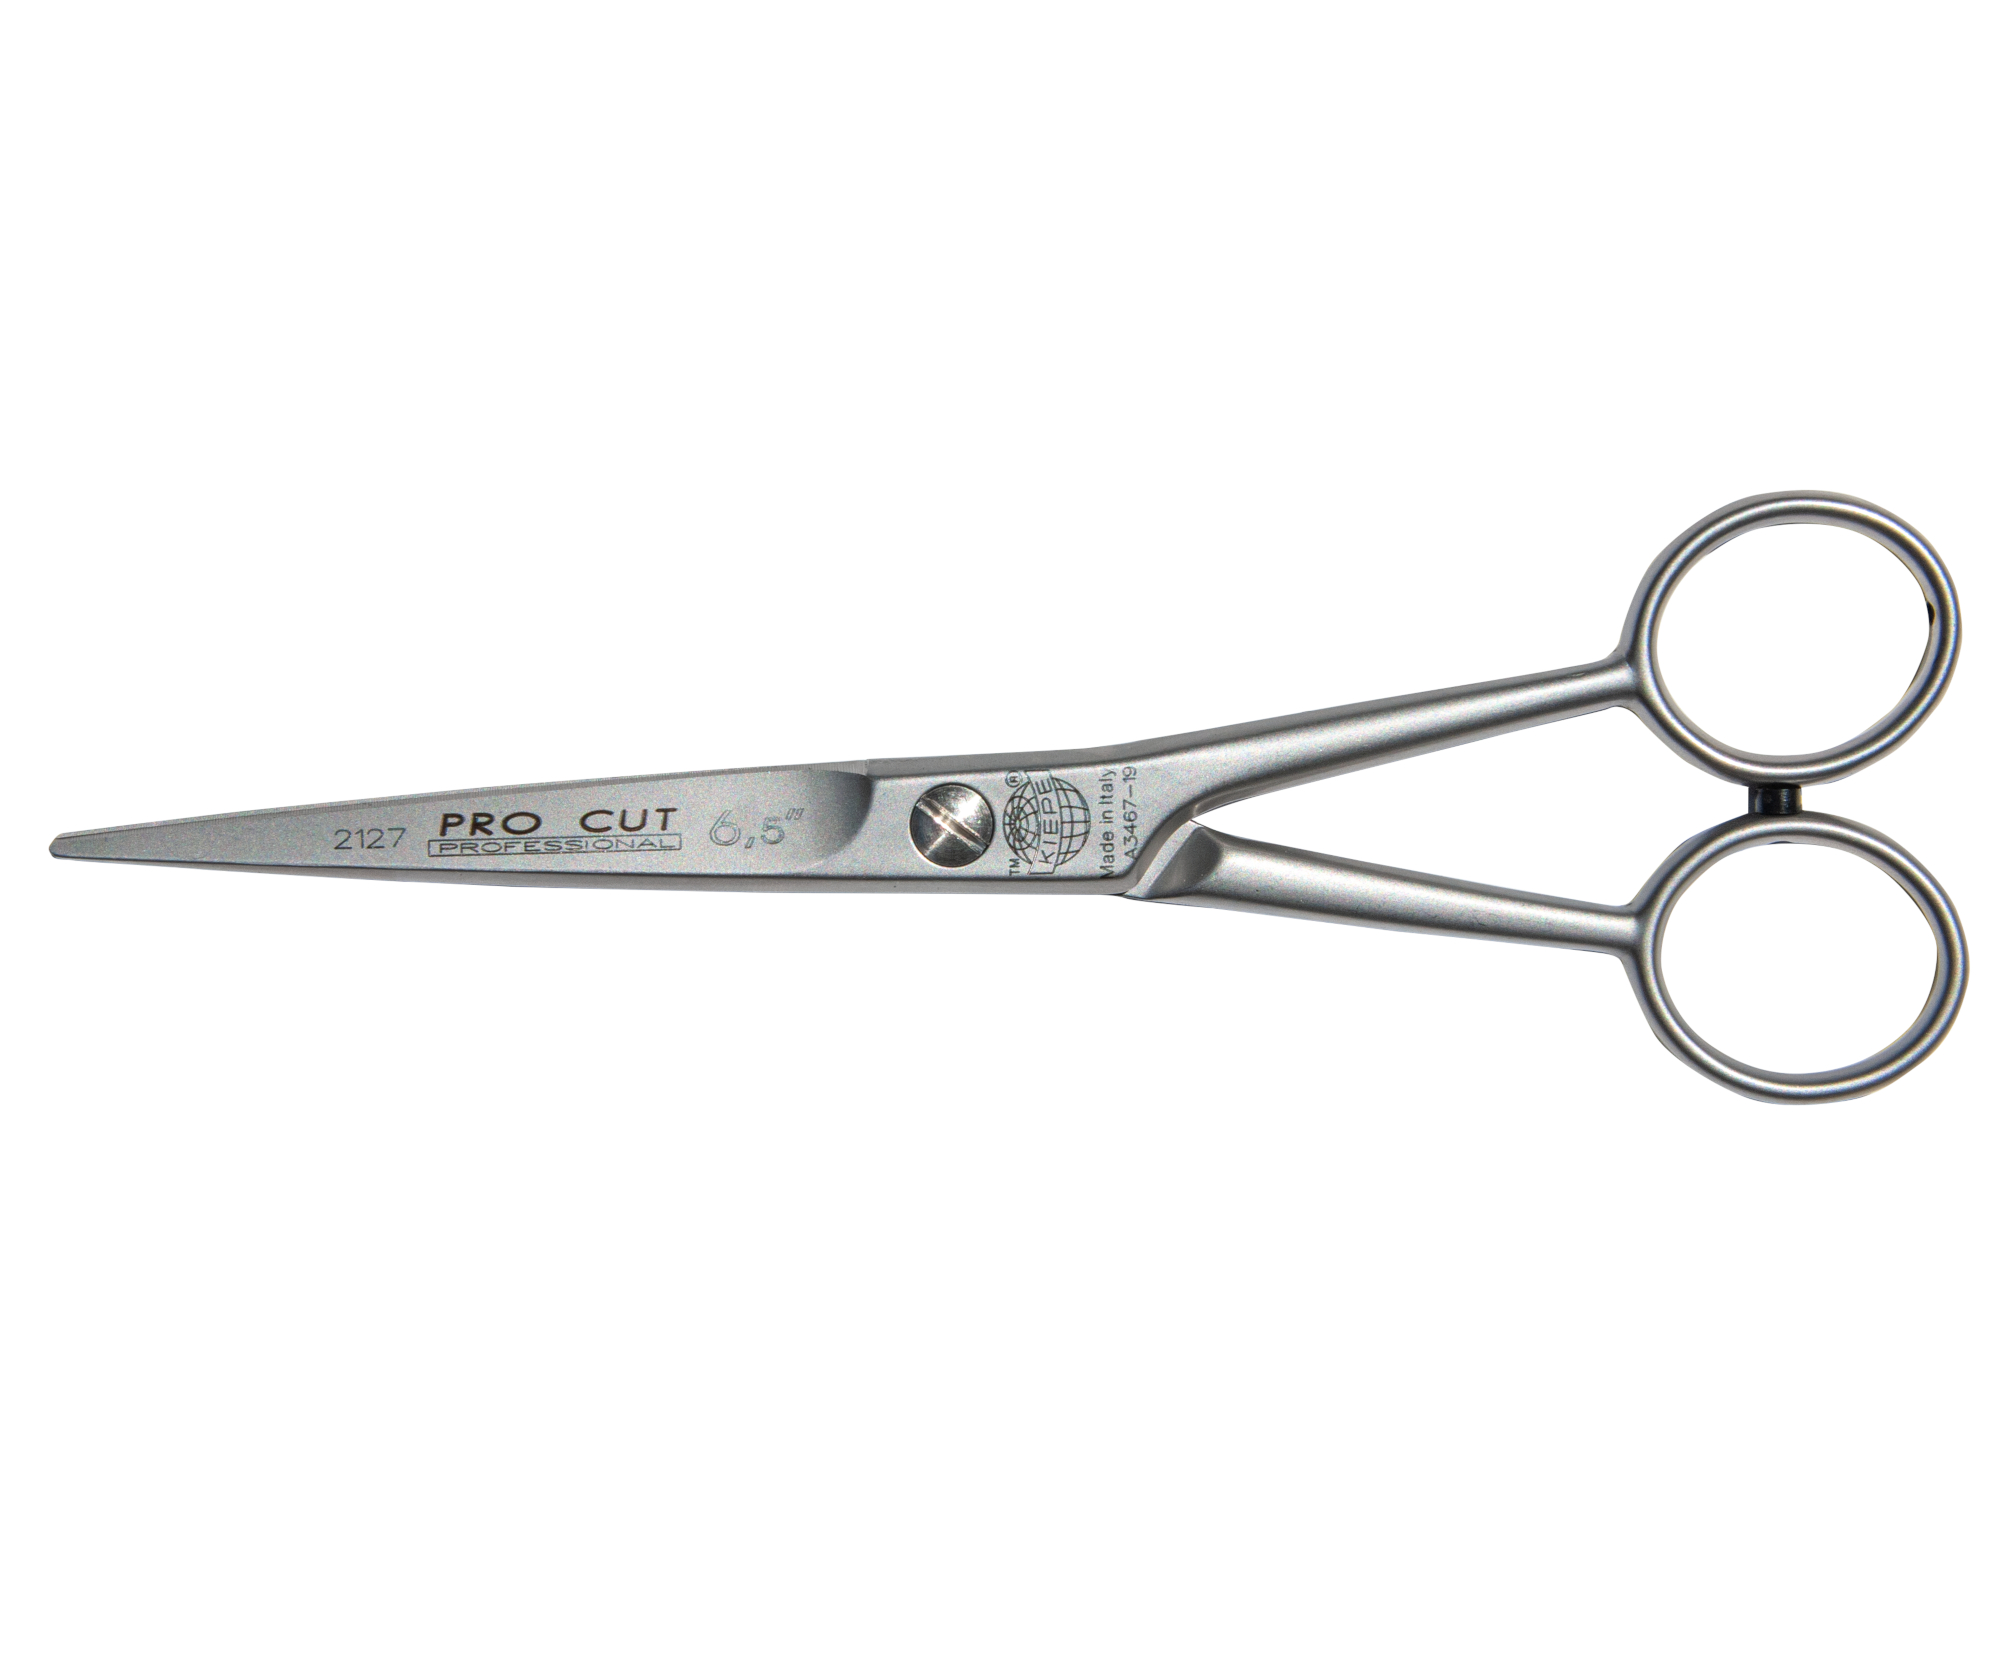 Kadeřnické nůžky s mikroozubením Kiepe Standard Hair Scissors Pro Cut 2127 - 6,5" stříbrné (2127/6.5) + DÁREK ZDARMA